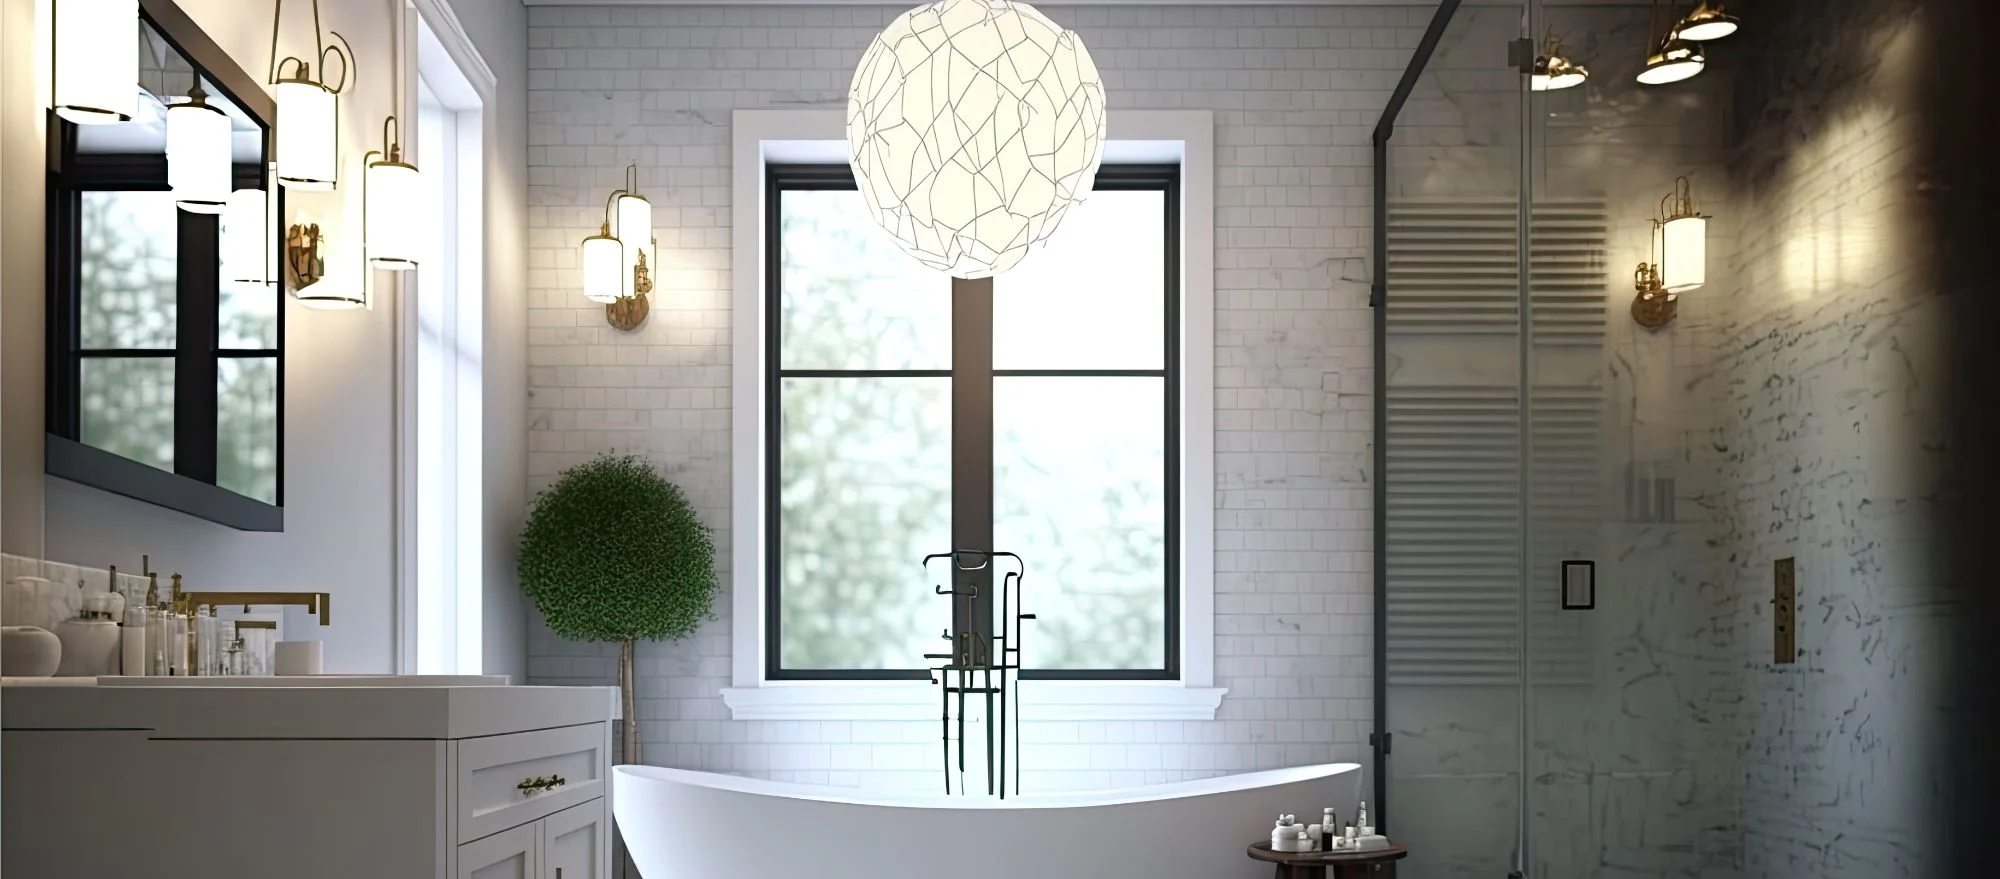 Perfektes Licht und gutes Design: Spiegelbeleuchtung im Badezimmer